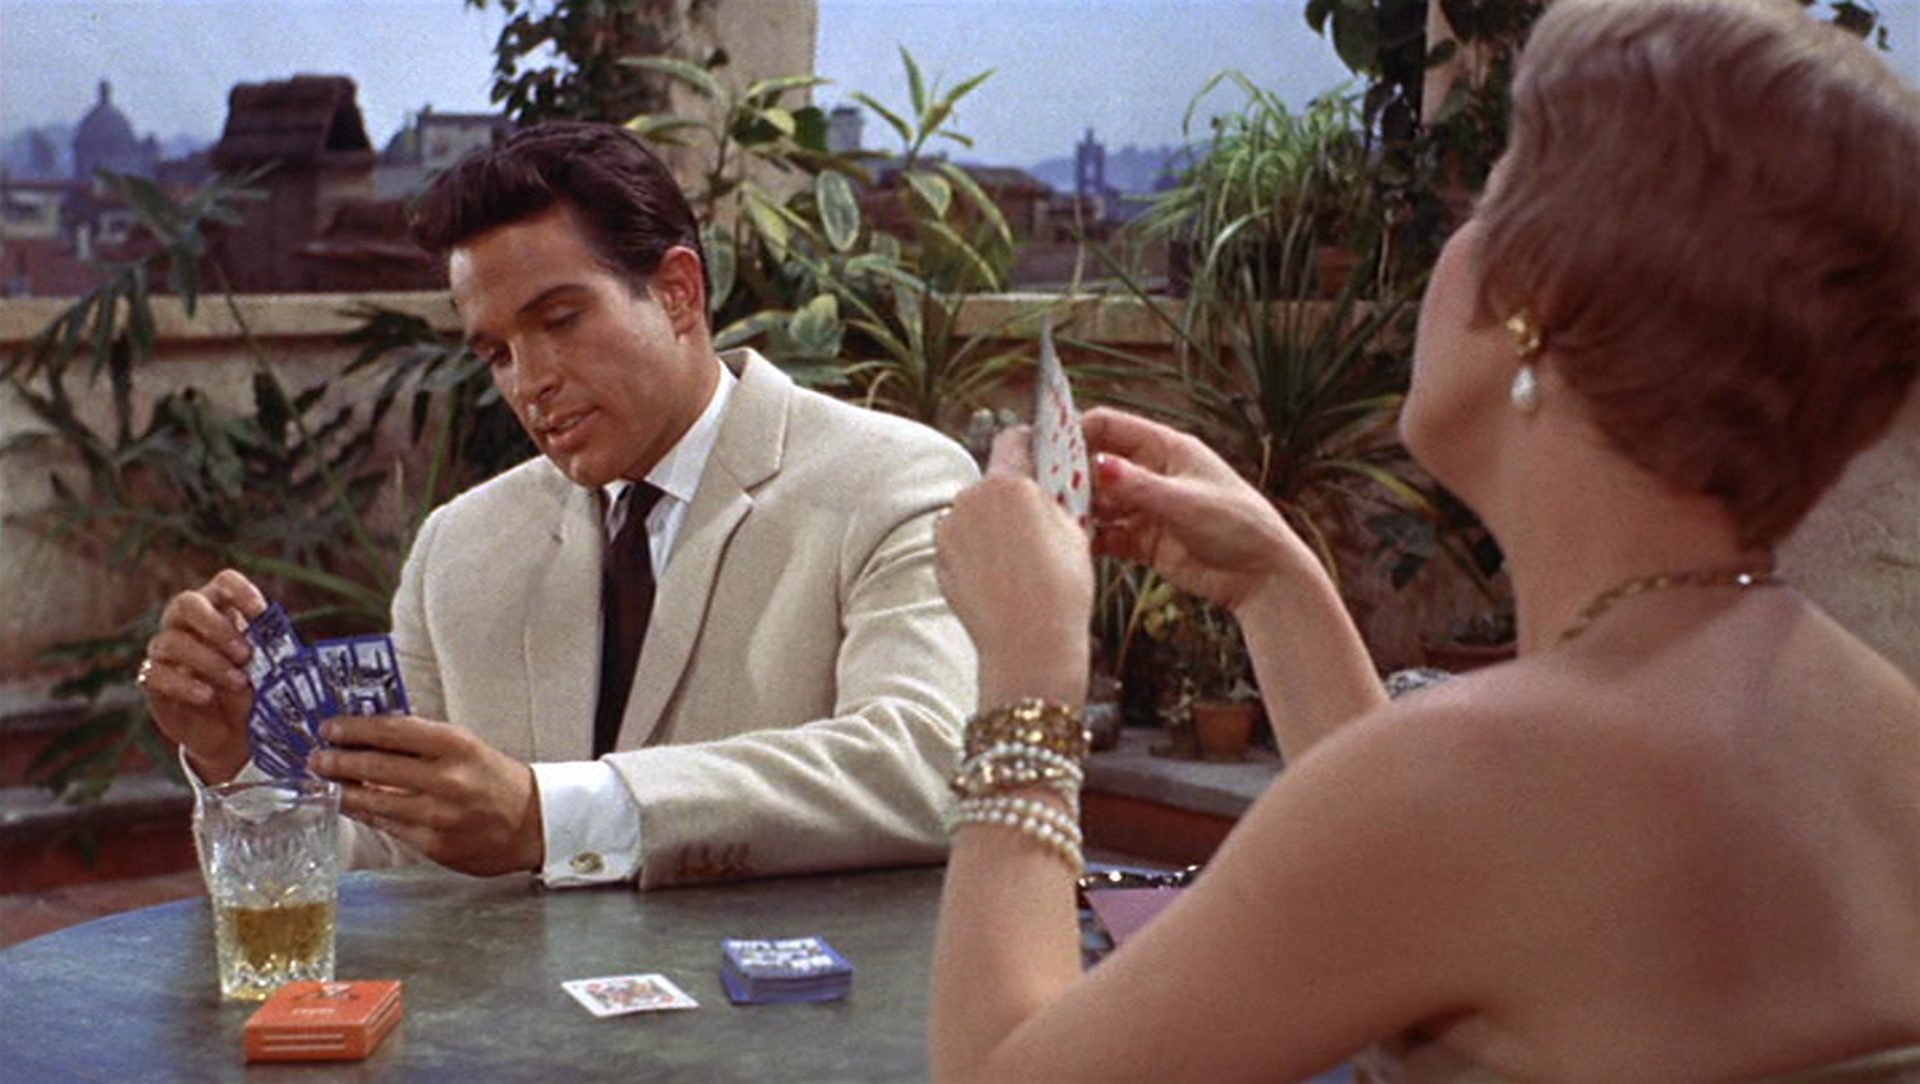 Italienisches Dolce-Vita-Flair: Warren Beatty im hellen Anzug beim Kartenspiel am Tisch mit einer ihm gegenüber sitzenden Frau.